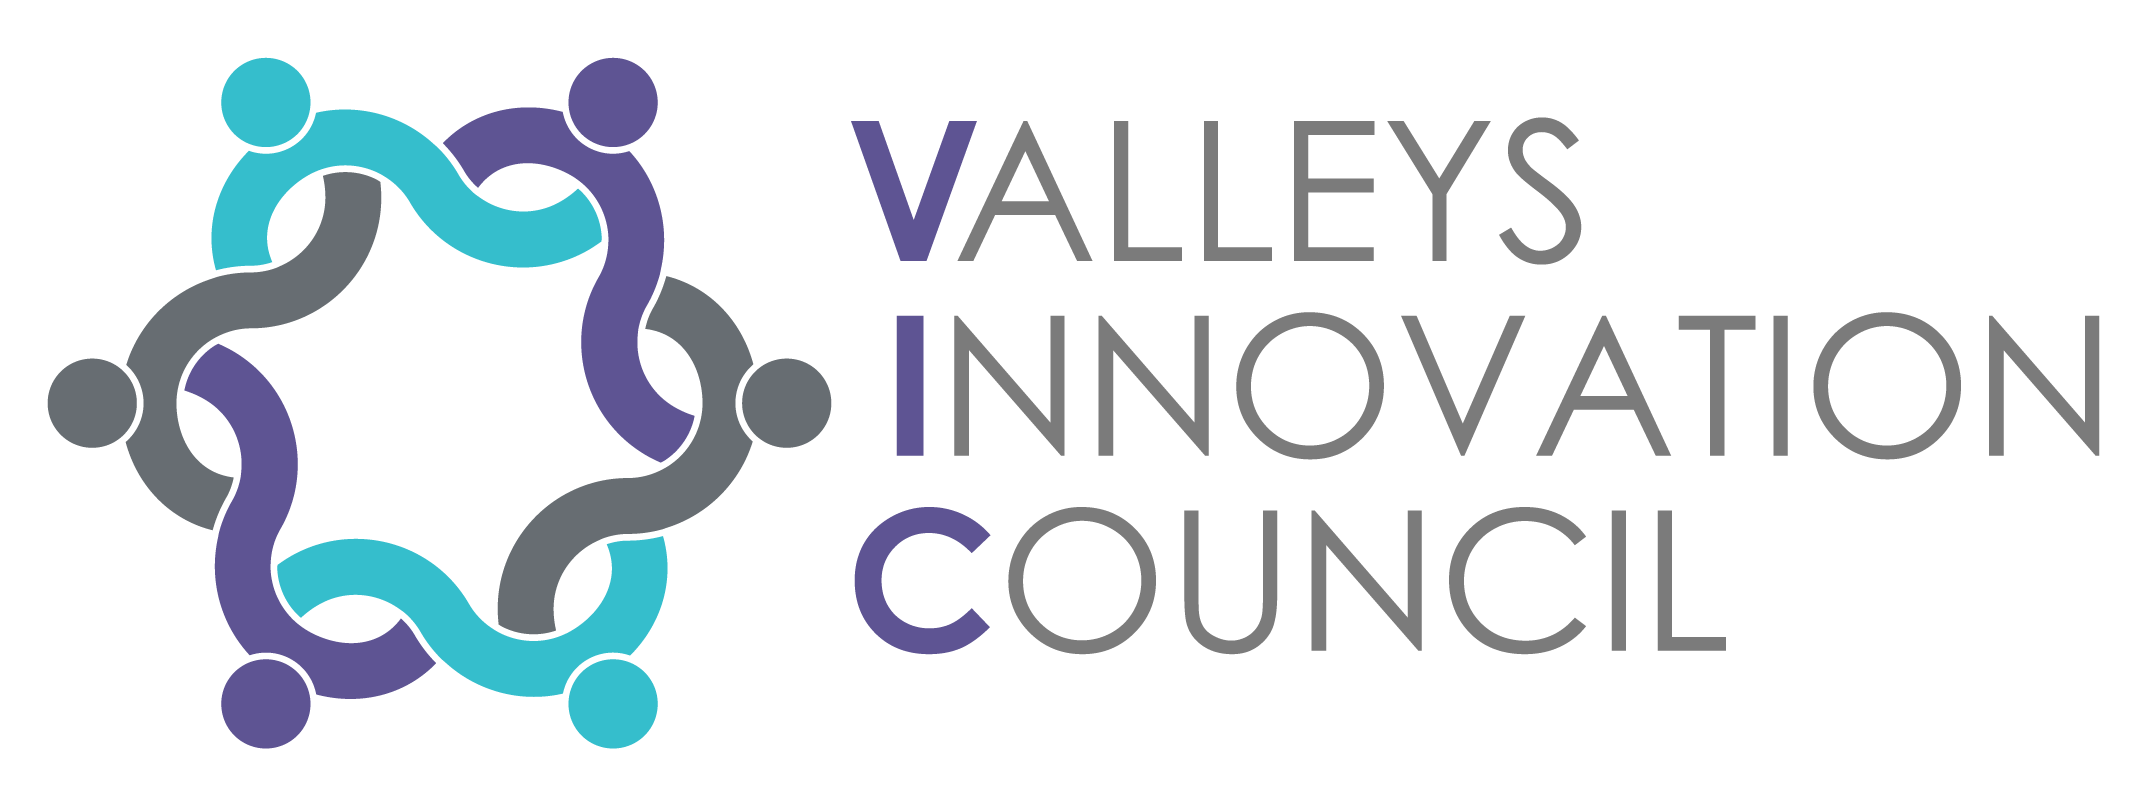 Valleys Innovation Council